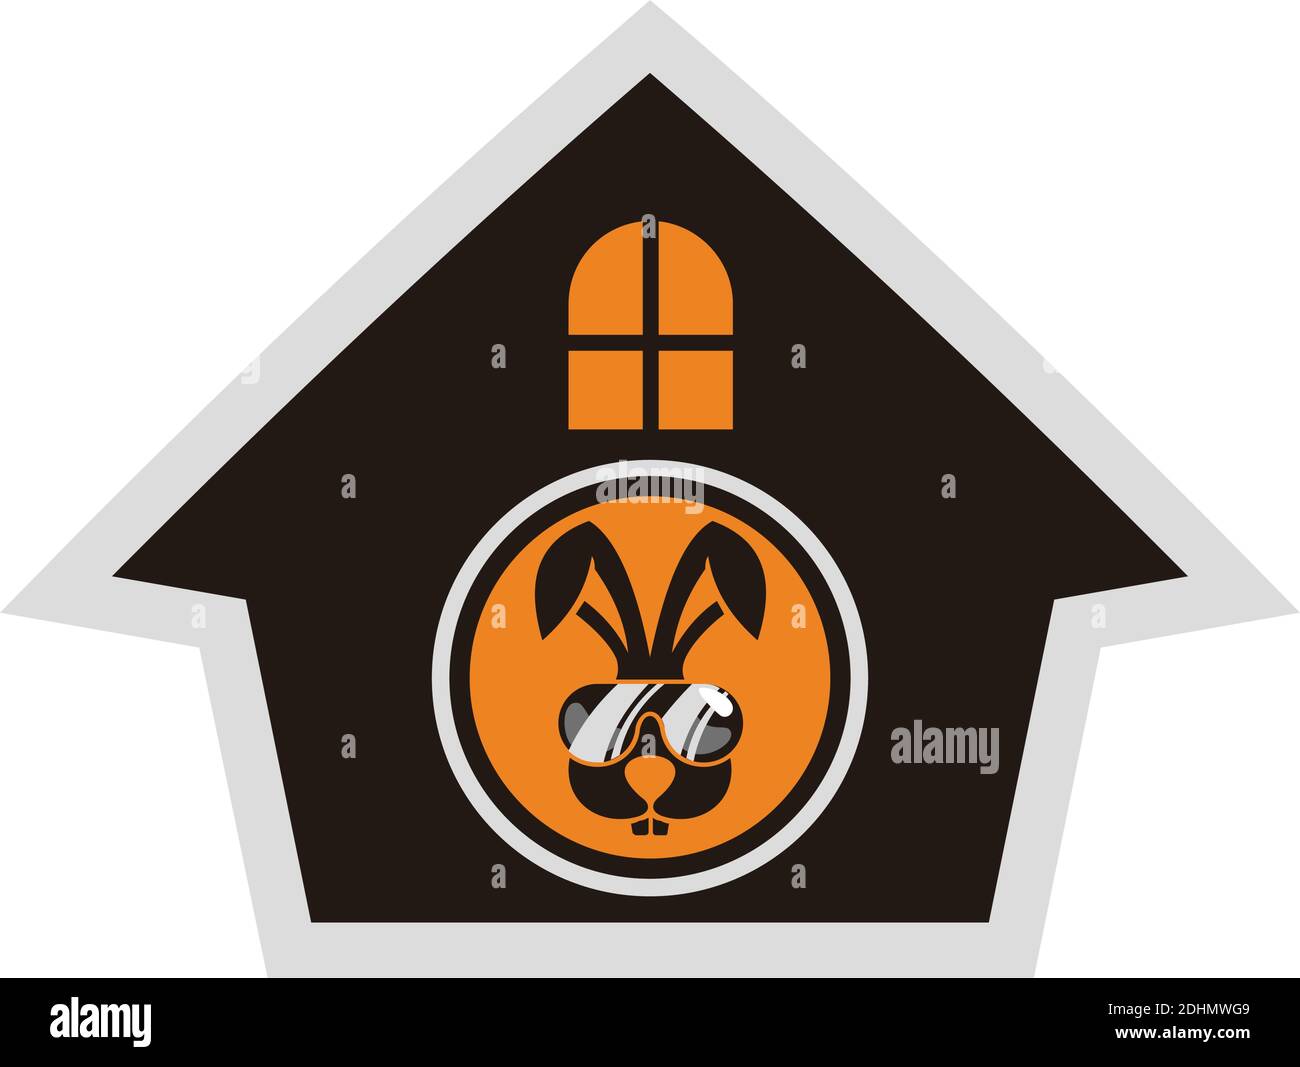 funny rabbit house home icon flat logo vector design concept Stock Vector